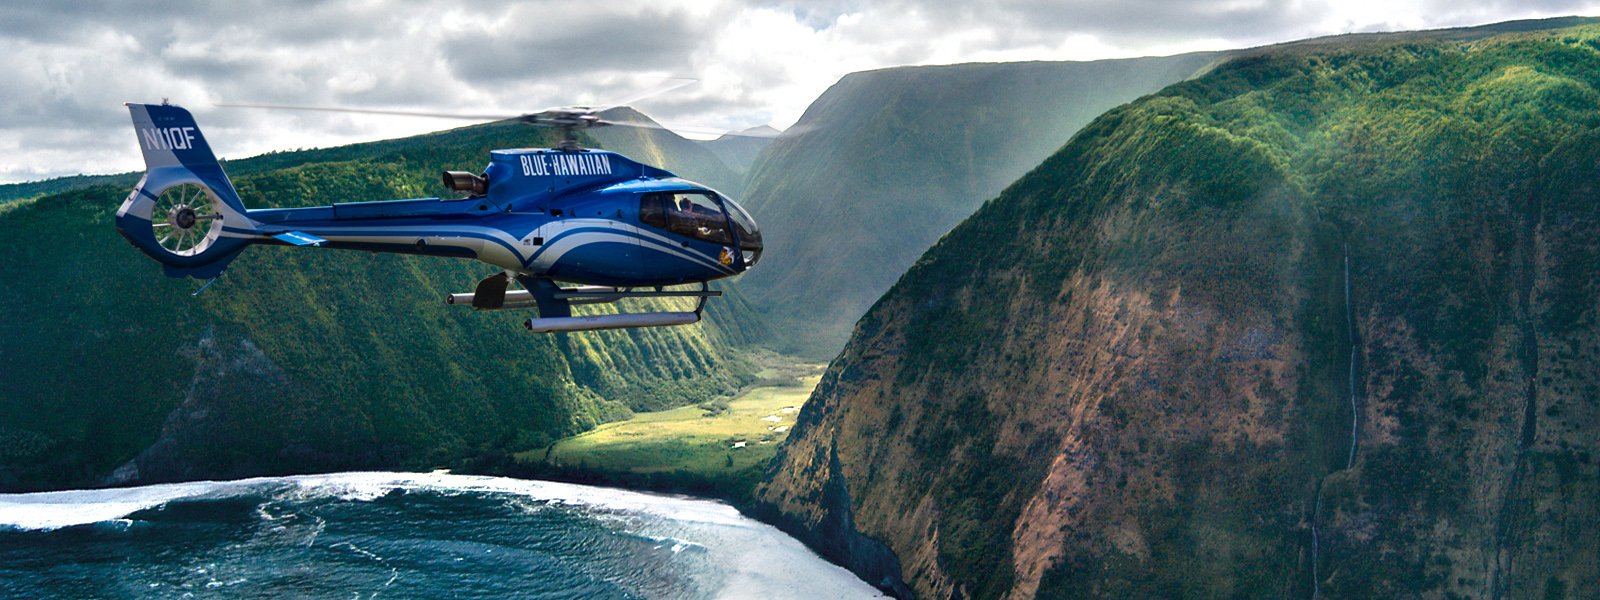 夏威夷大島 Blue Hawaiian 直升機觀光之旅